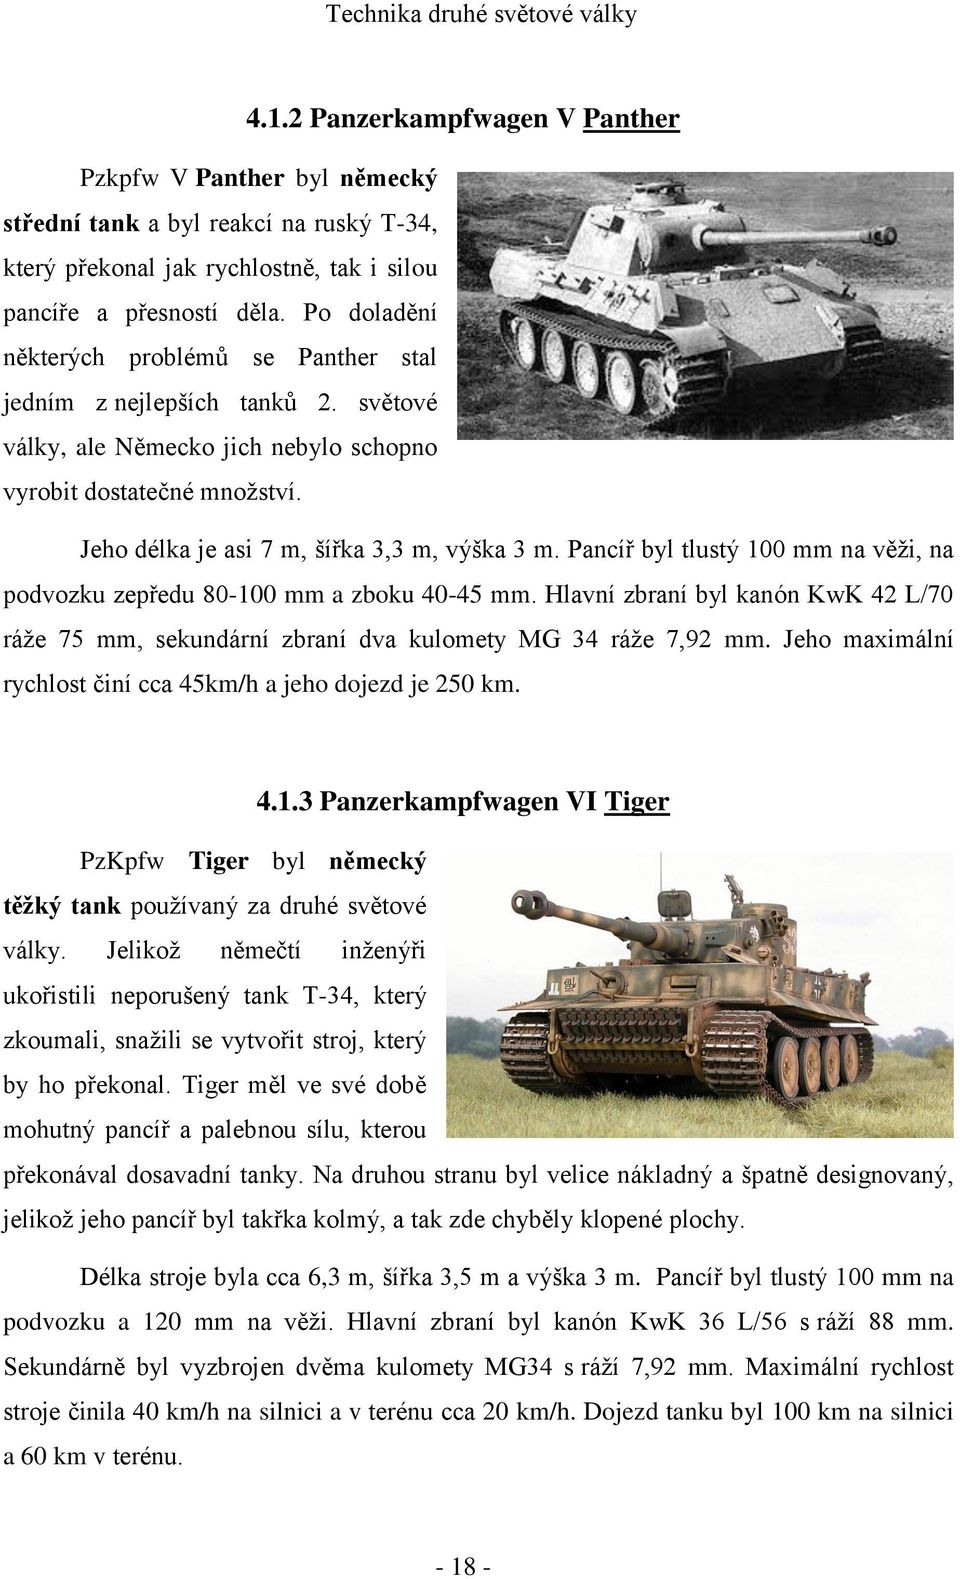 Pancíř byl tlustý 100 mm na věži, na podvozku zepředu 80-100 mm a zboku 40-45 mm. Hlavní zbraní byl kanón KwK 42 L/70 ráže 75 mm, sekundární zbraní dva kulomety MG 34 ráže 7,92 mm.